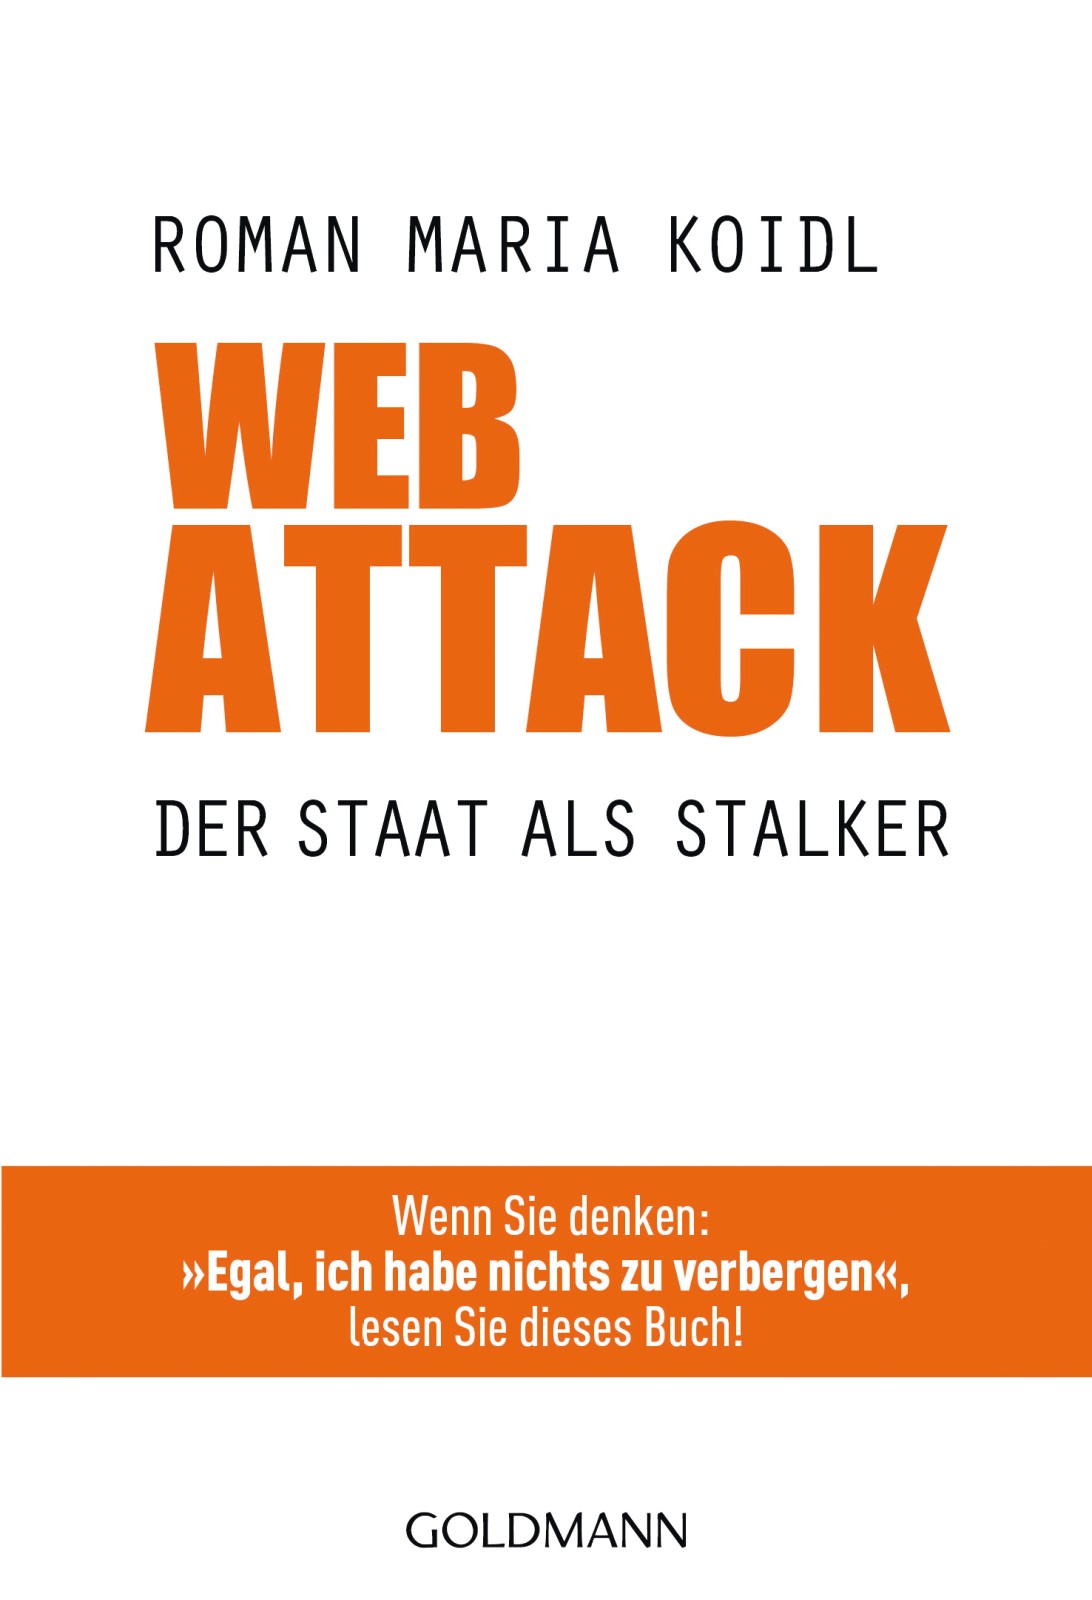 WebAttack Der Staat als Stalker - Wenn Sie denken: "Egal, ich habe nichts zu verbergen", lesen Sie dieses Buch!